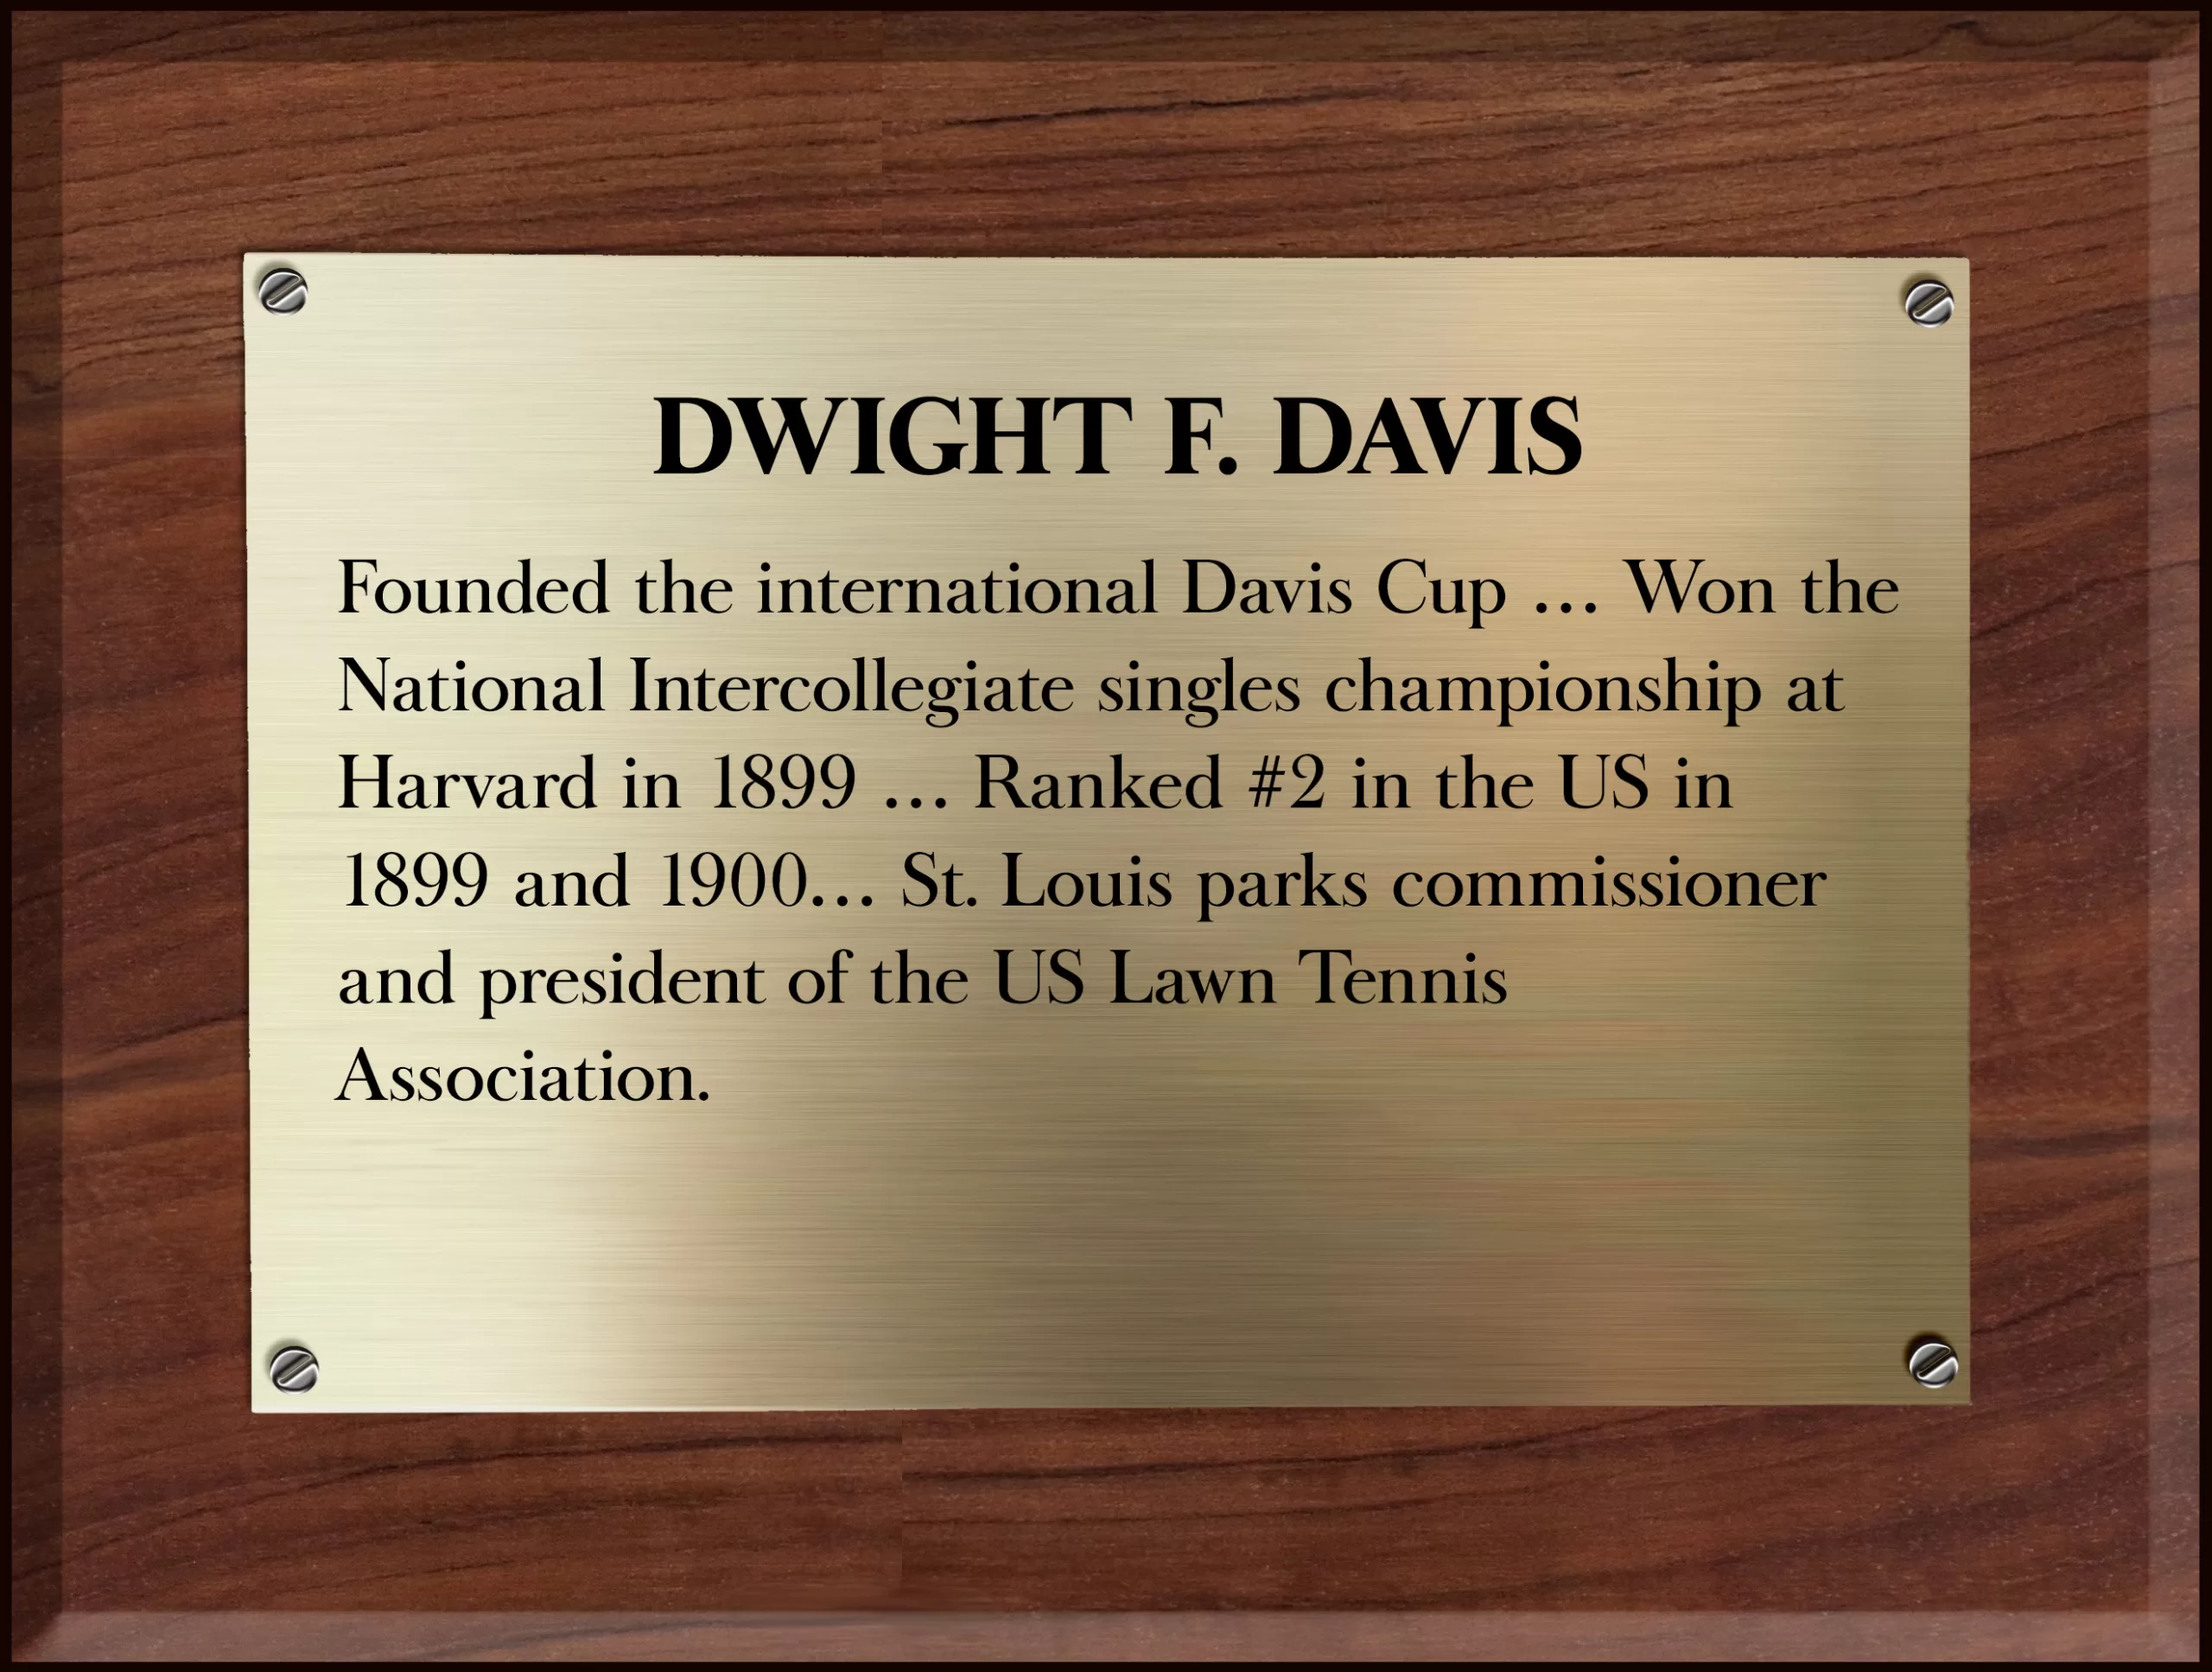 Dwight F. Davis